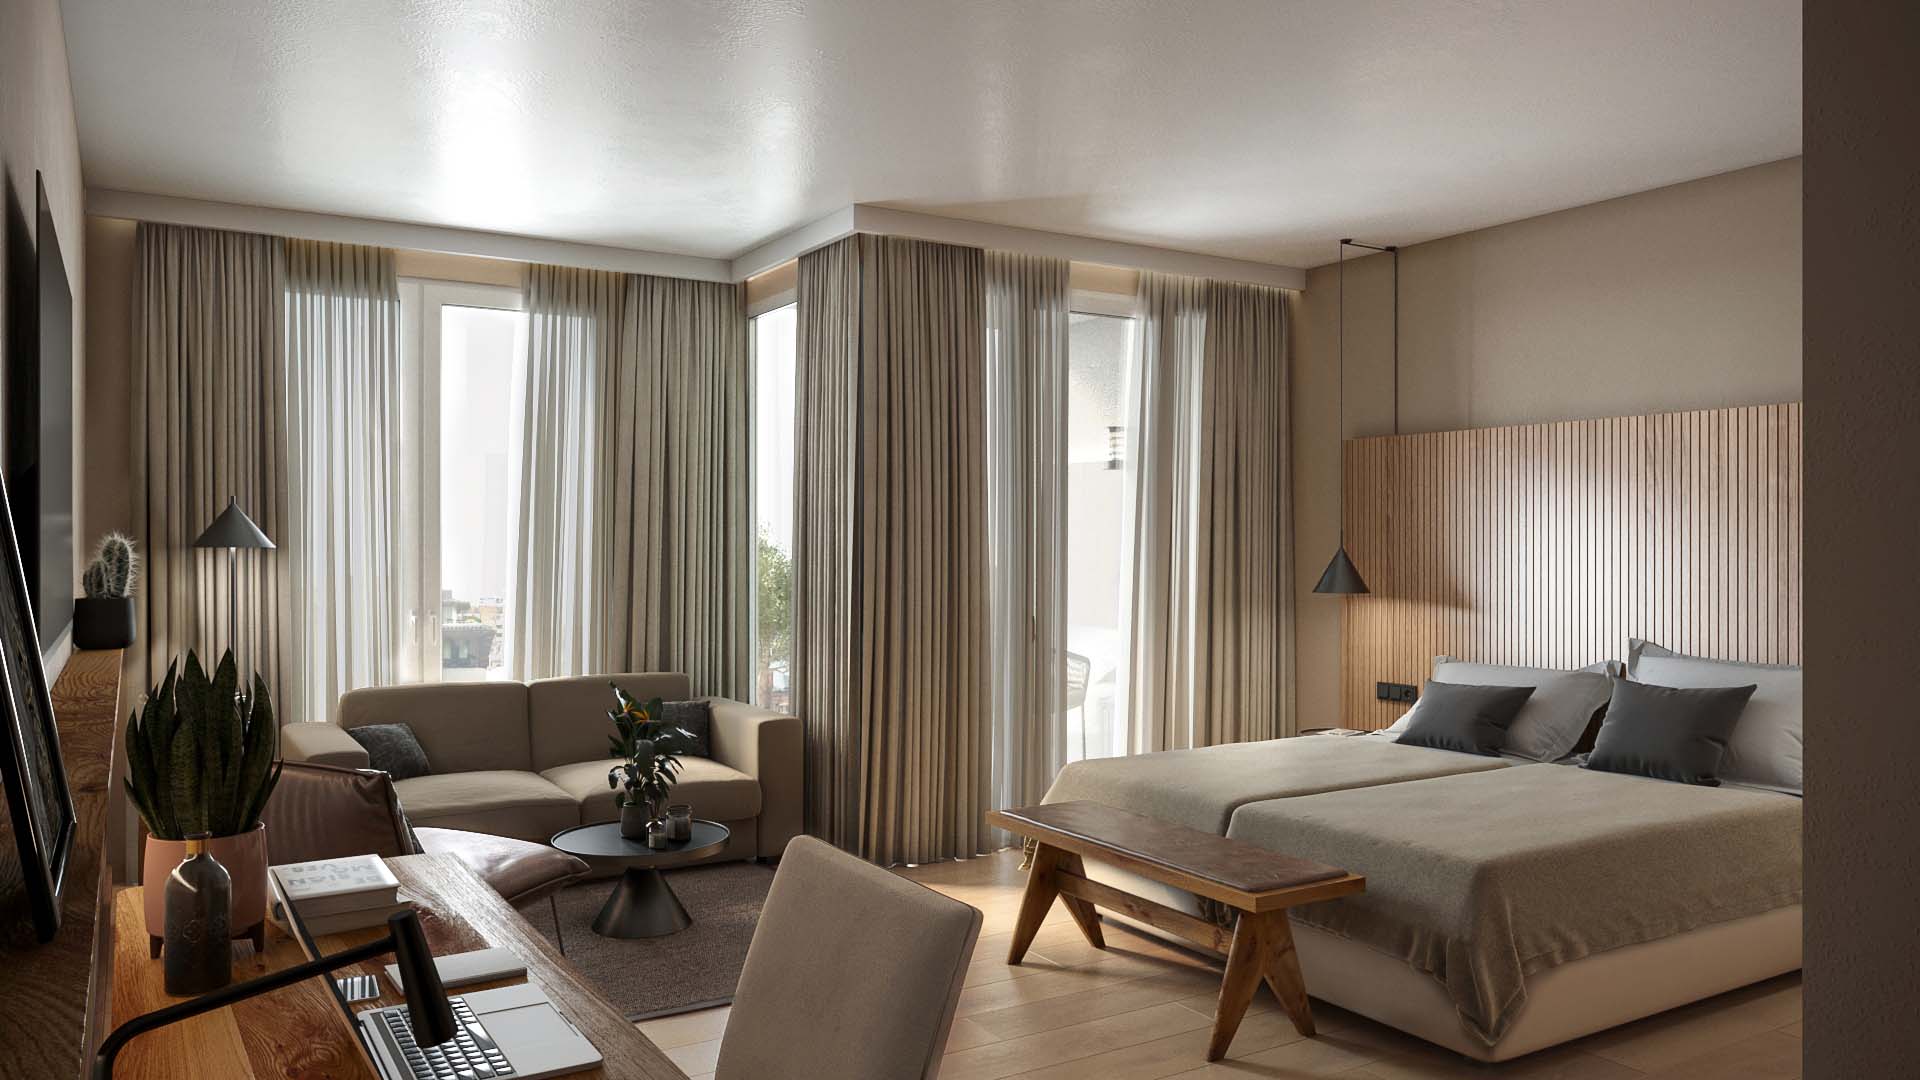 Arbeitstisch, Sofa und ein Doppelbett in einem beige dekorierten Hotelzimmer